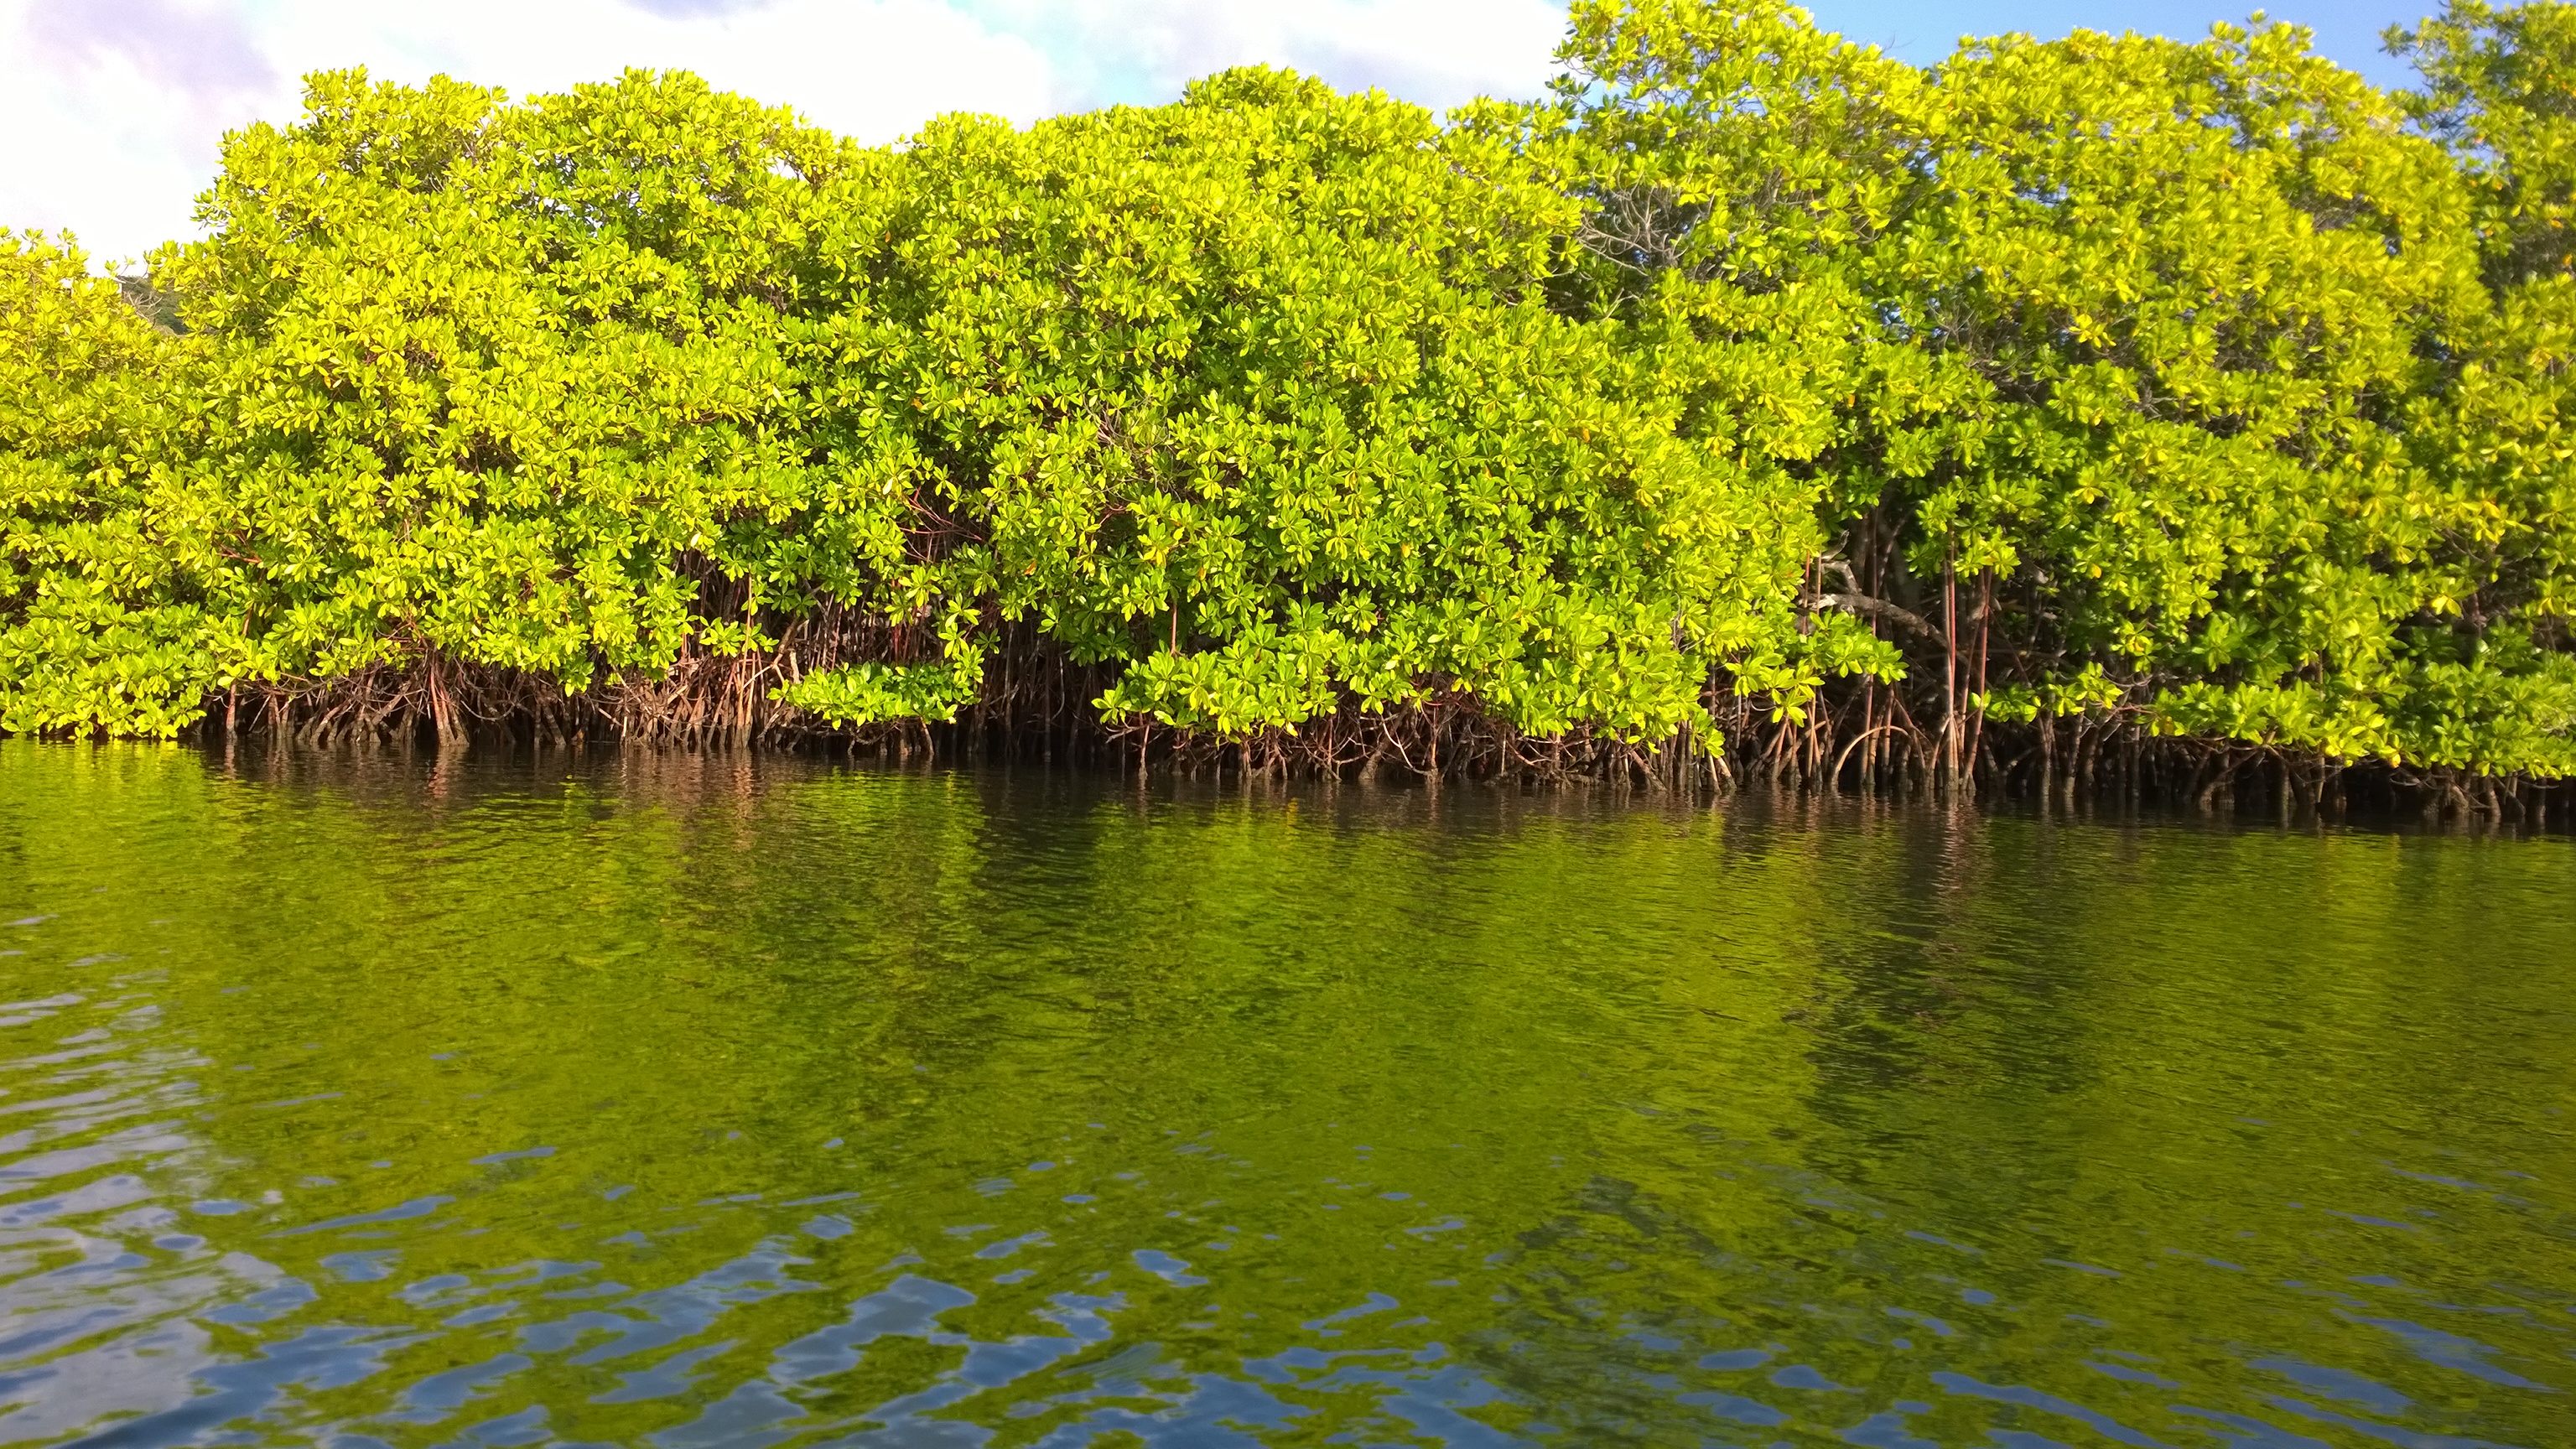 Let me present you, mangrove-räme! No niin, nyt olet nähnyt kaiken nähtävän, eikä tarvitse maksaa 100 Karibian dollaria rämeen näkemisestä Tyrrel Bayssa.